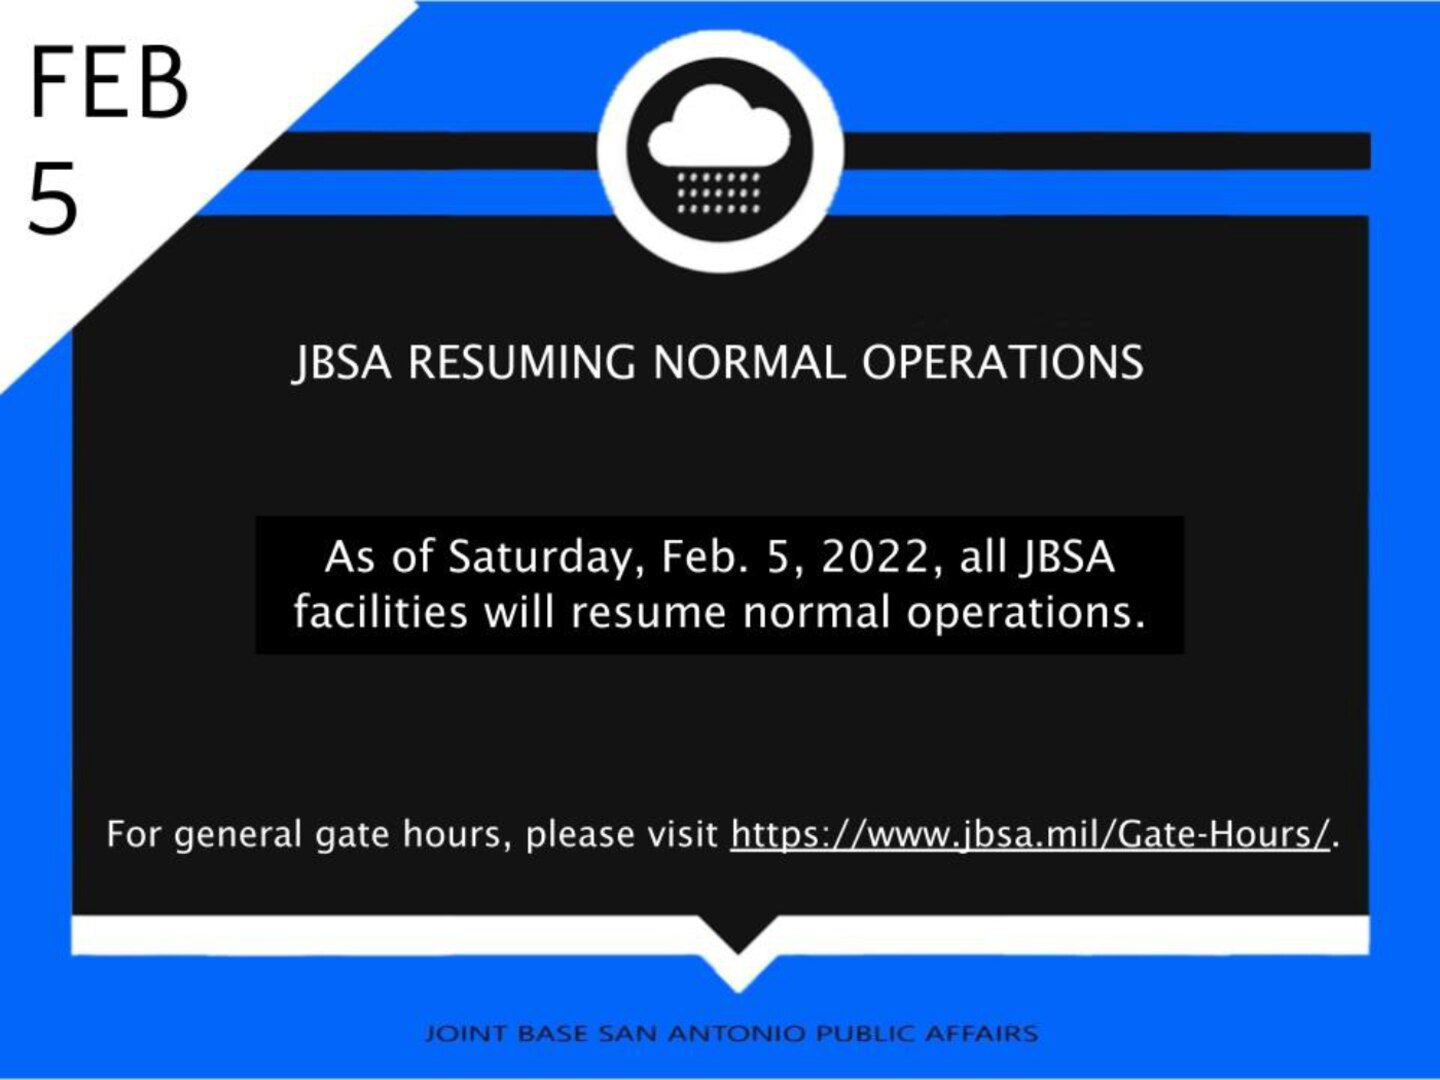 JBSA RESUMING NORMAL OPERATIONS